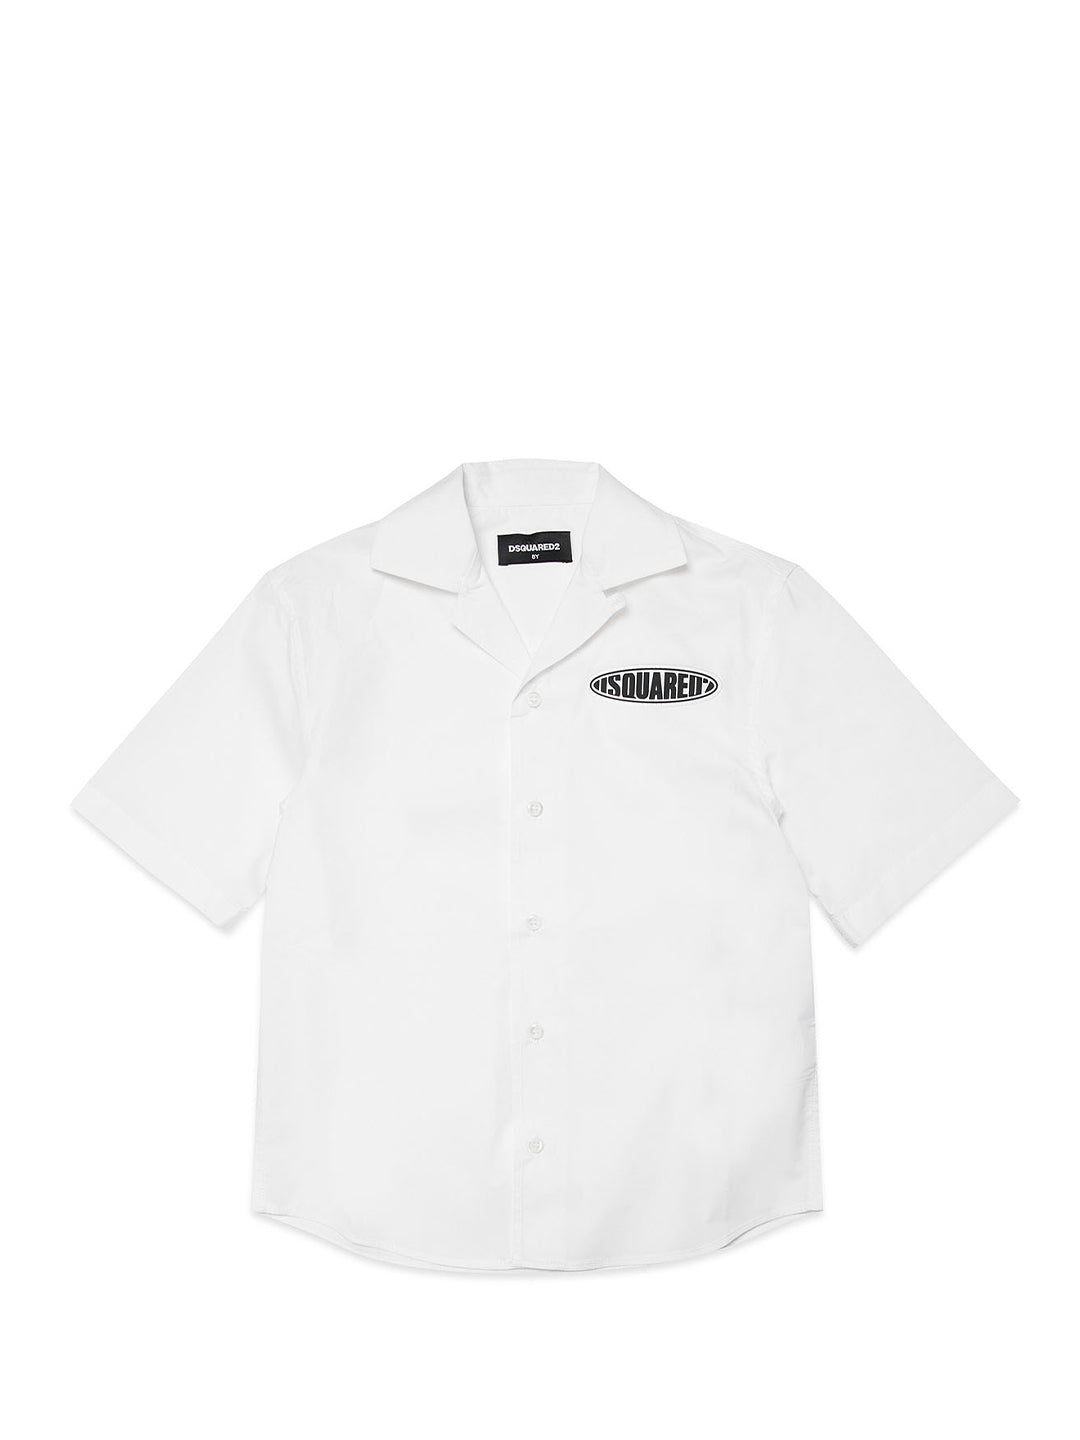 Dsquared 2 camicia kids bianco con logo